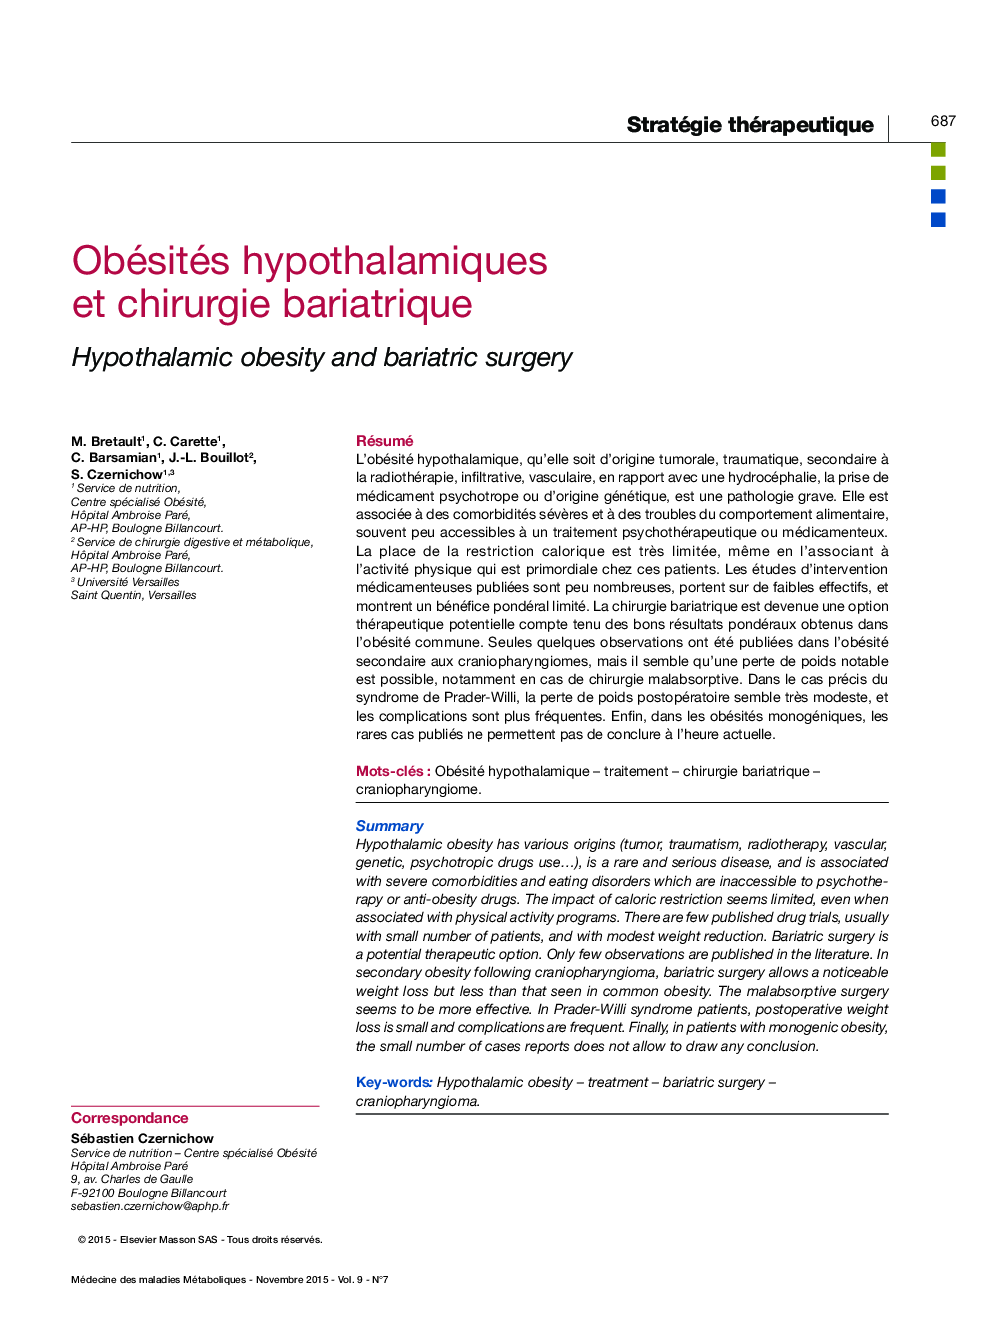 Obésités hypothalamiques et chirurgie bariatrique